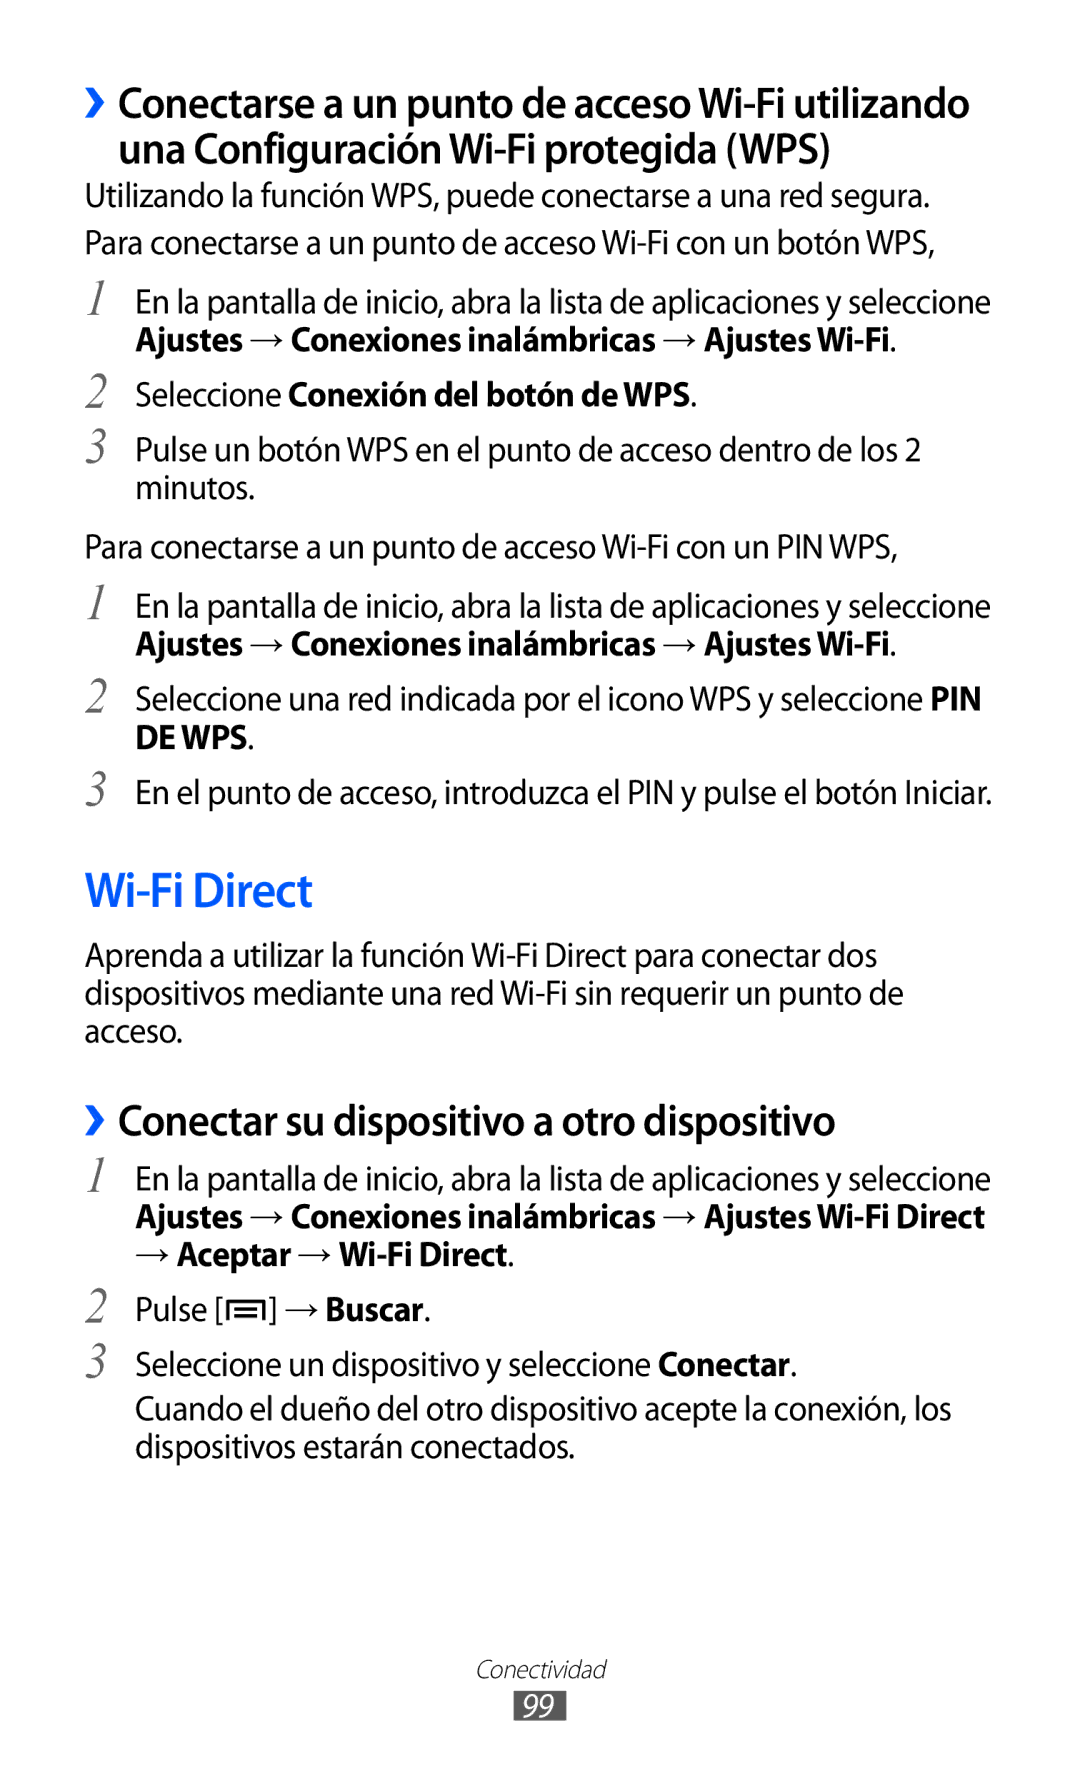 Samsung GT-S6500RWDCOA Wi-Fi Direct, ››Conectar su dispositivo a otro dispositivo, Seleccione Conexión del botón de WPS 